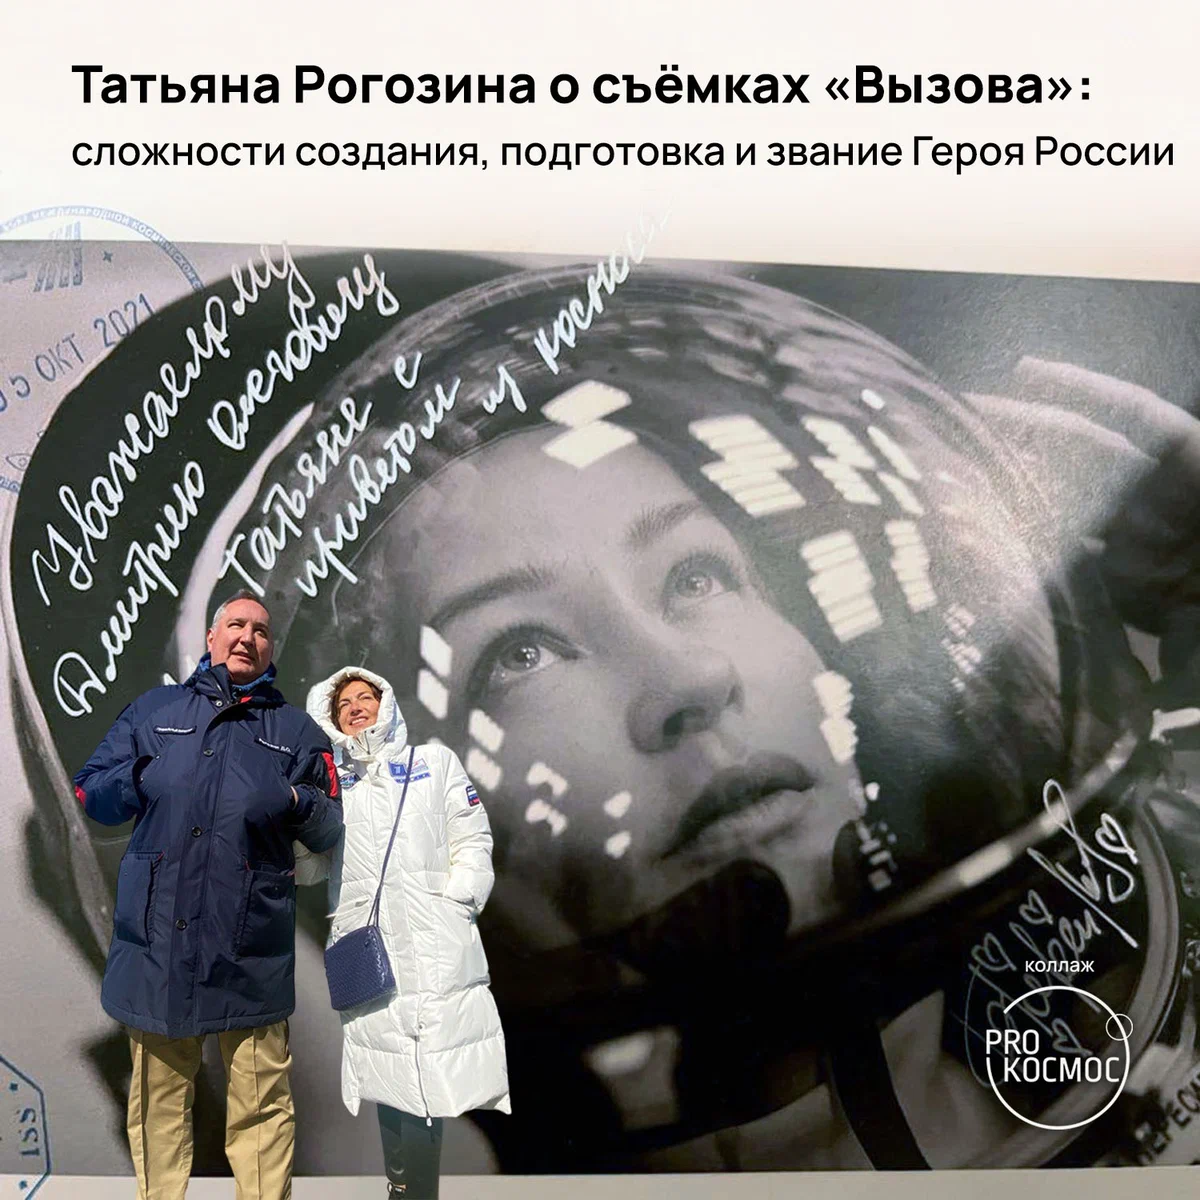 После полёта в космос Юлия Пересильд подарила Татьяне и Дмитрию Рогозиным вот такую интересную космическую открытку, «погашенную» на орбите. Фото: Татьяна Рогозина height=1200px width=1200px